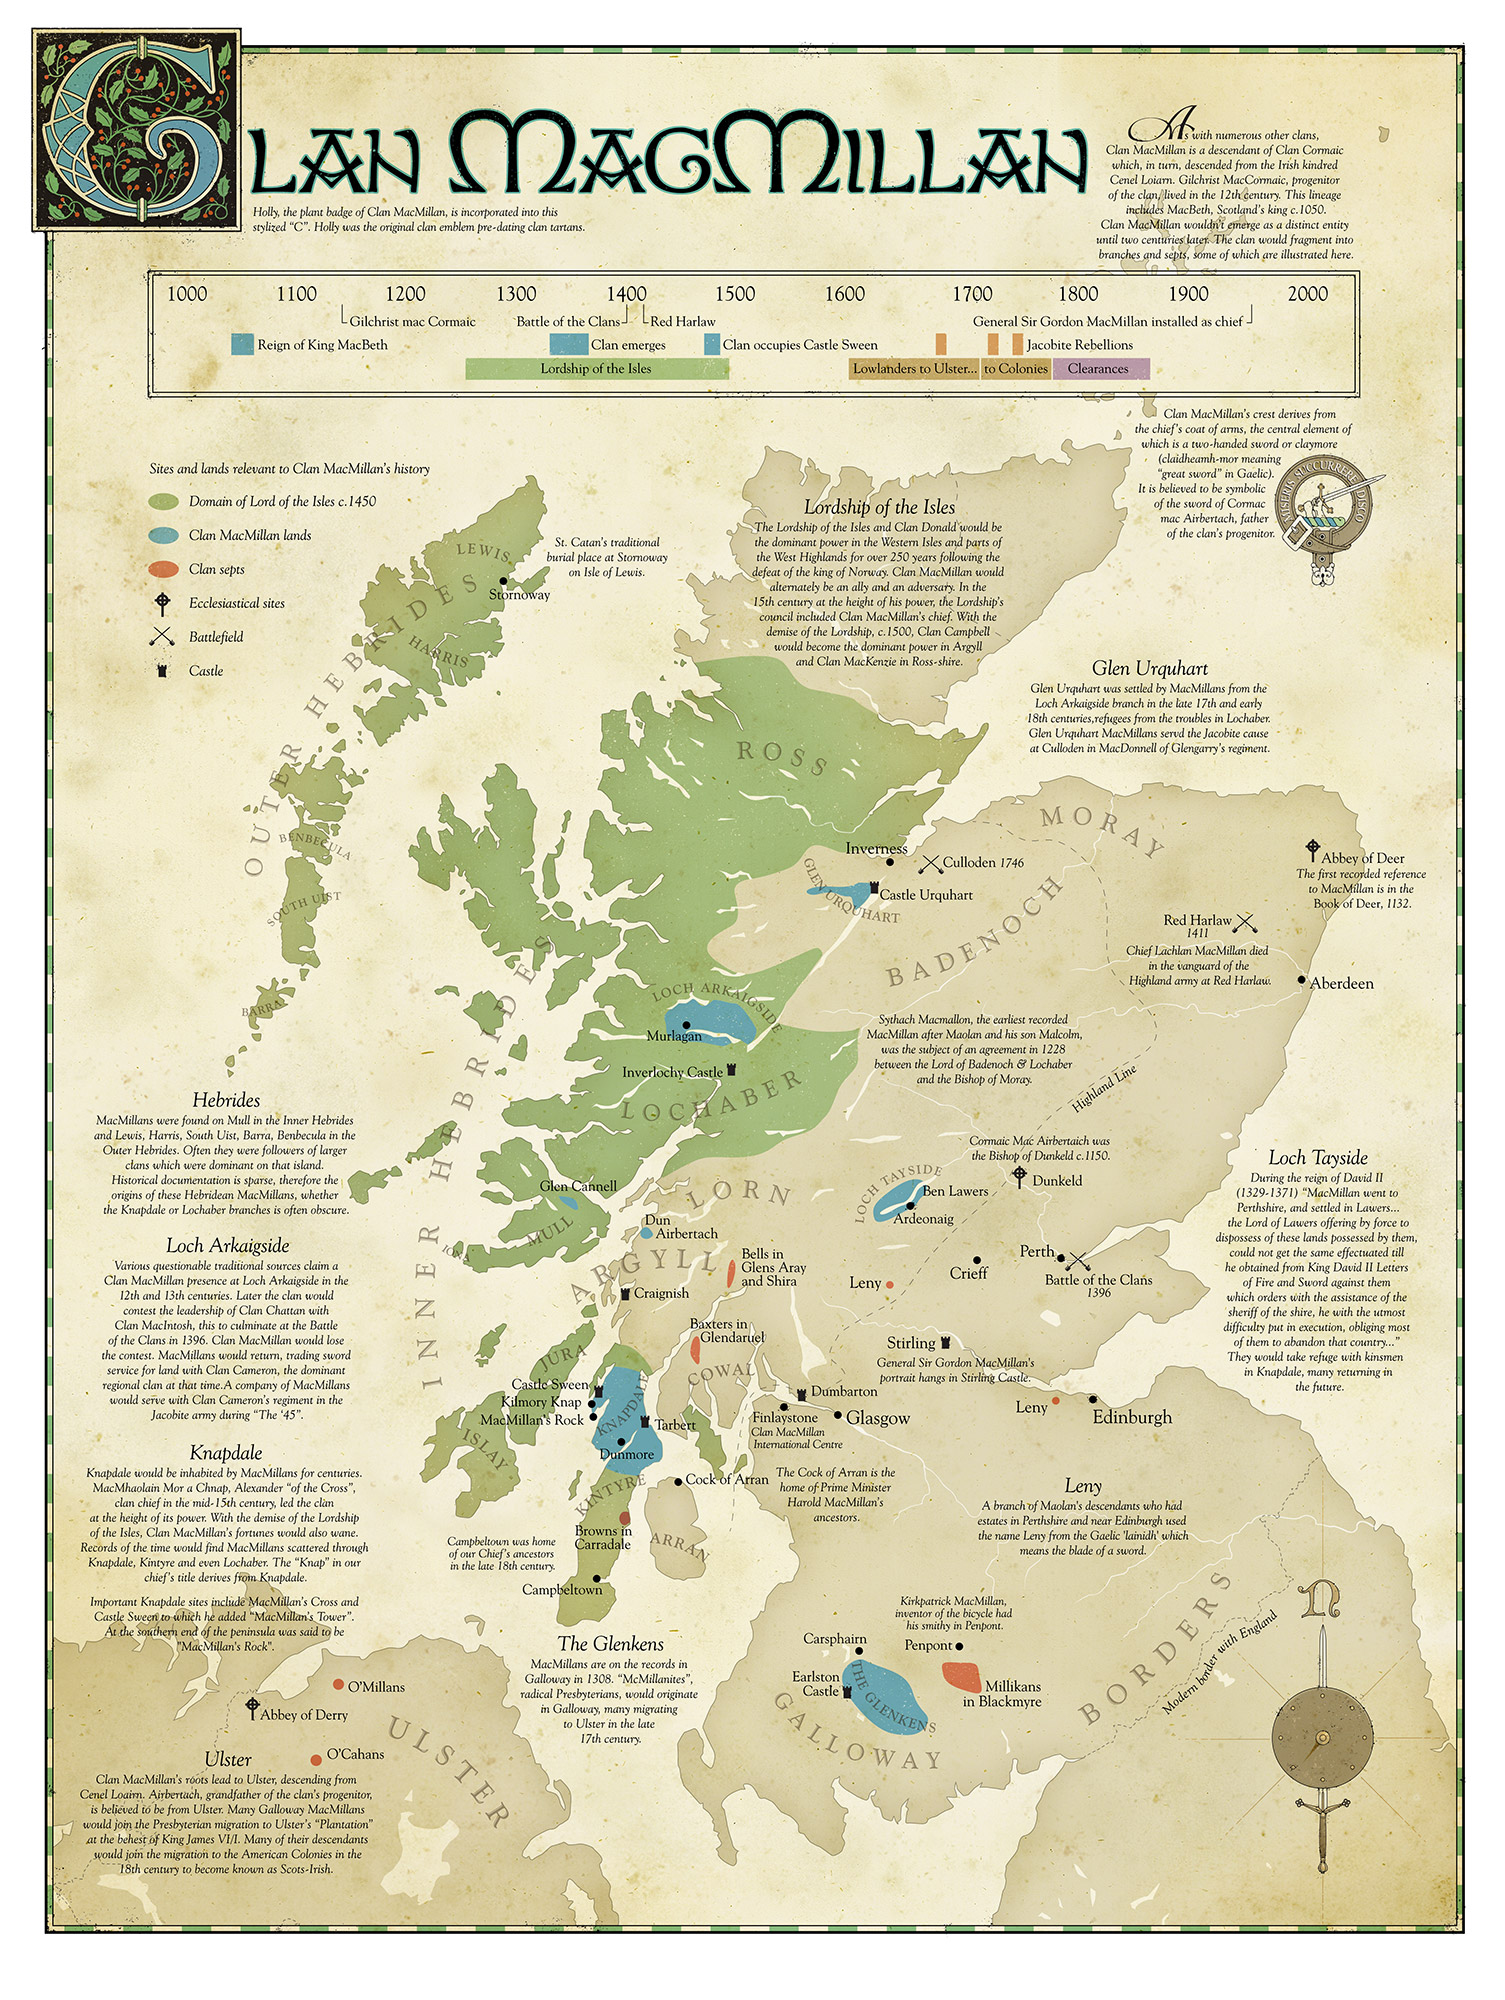 Map of Scotland illustrating Clan MacMillan lands and landmarks